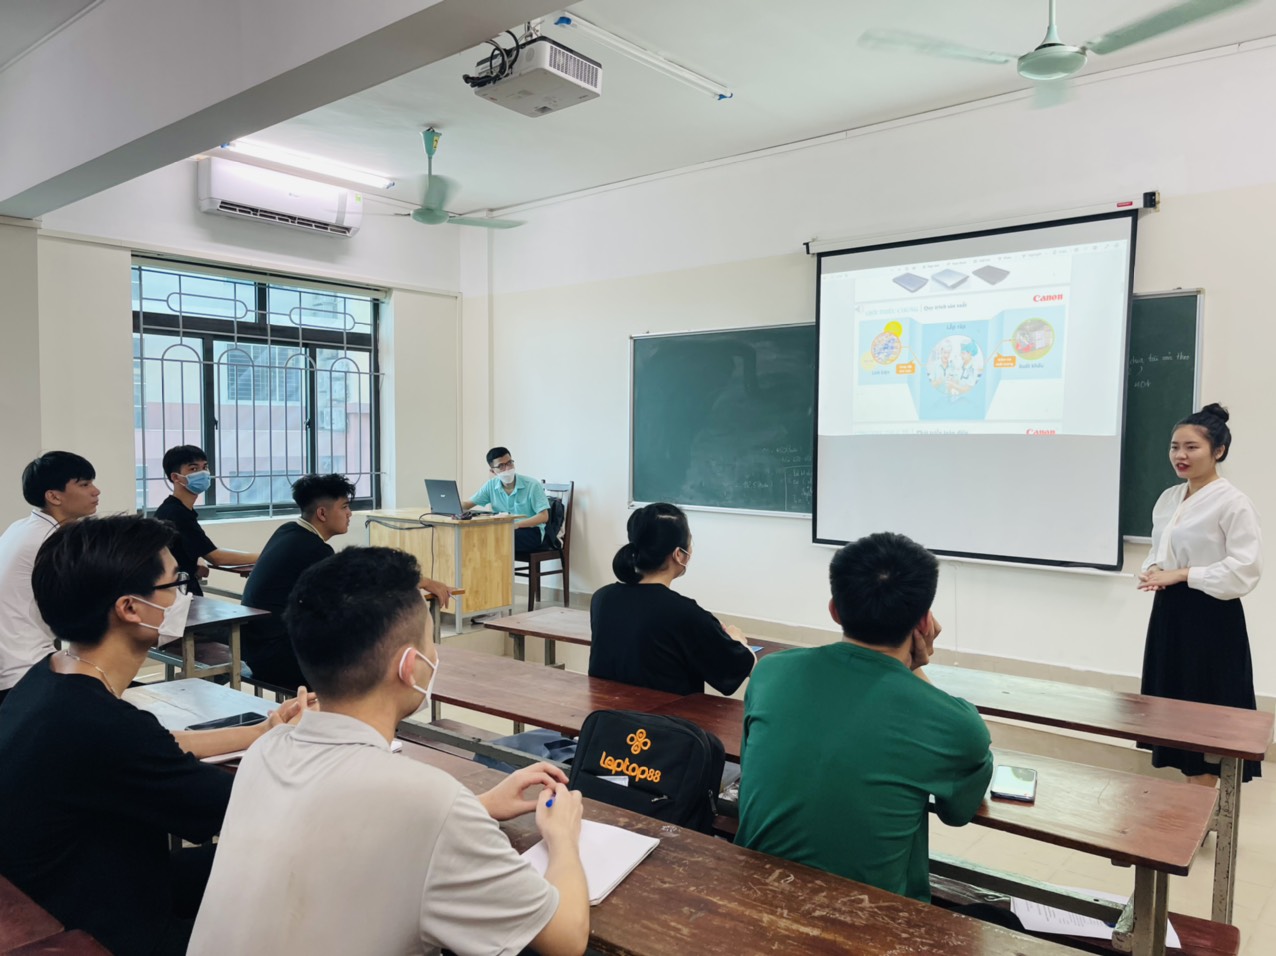 Đa dạng chương trình tham quan trải nghiệm thực tế tại doanh nghiệp cho sinh viên Trường Đại học Công nghiệp Hà Nội